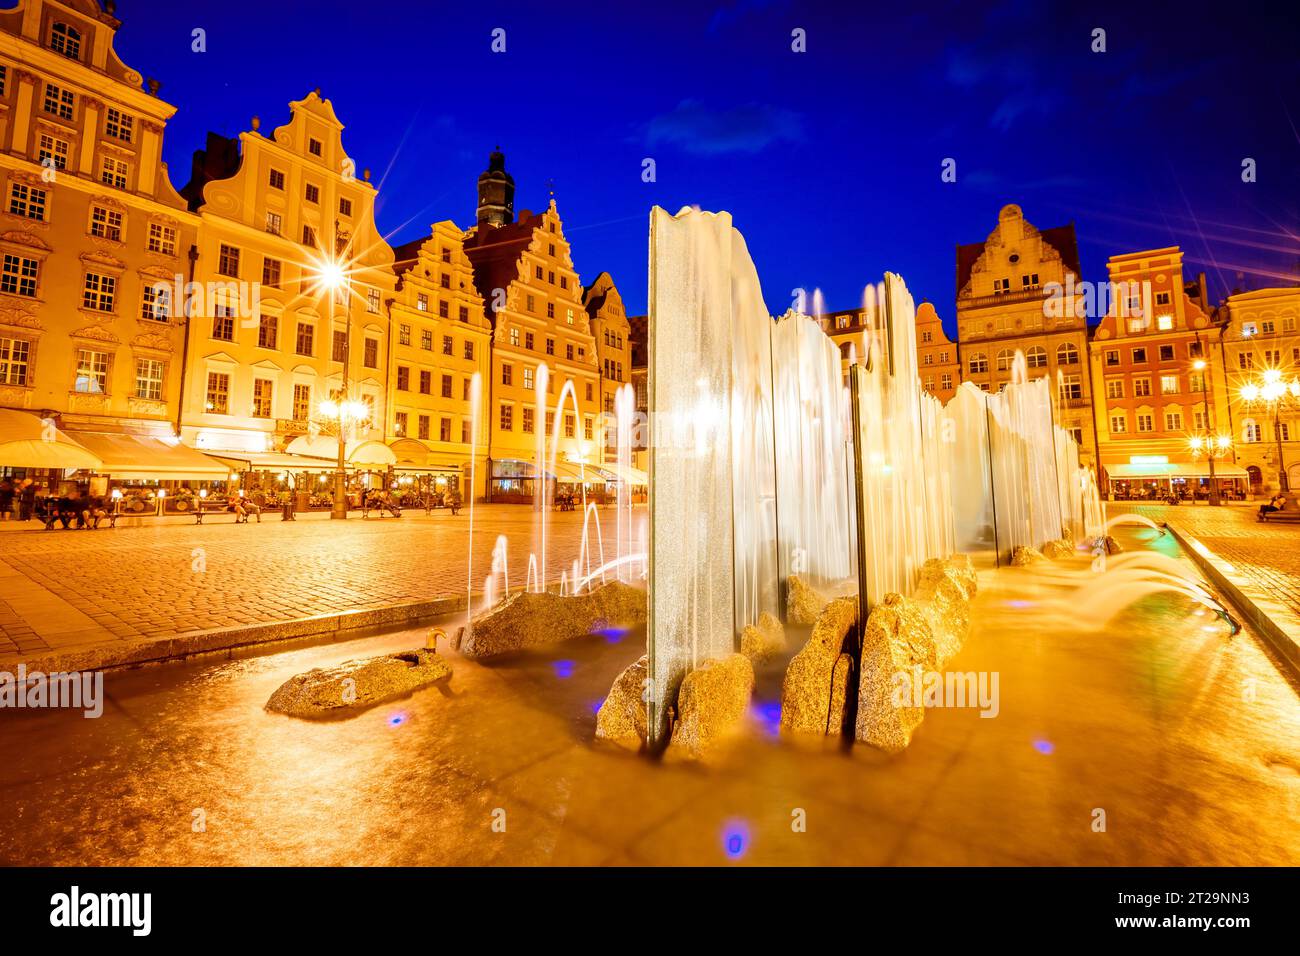 Impresionante imagen de la ciudad antigua. Ubicación Place Wroclaw Market Square, país de Polonia, famoso y centro cultural de Europa. Capital histórica de Sile Foto de stock